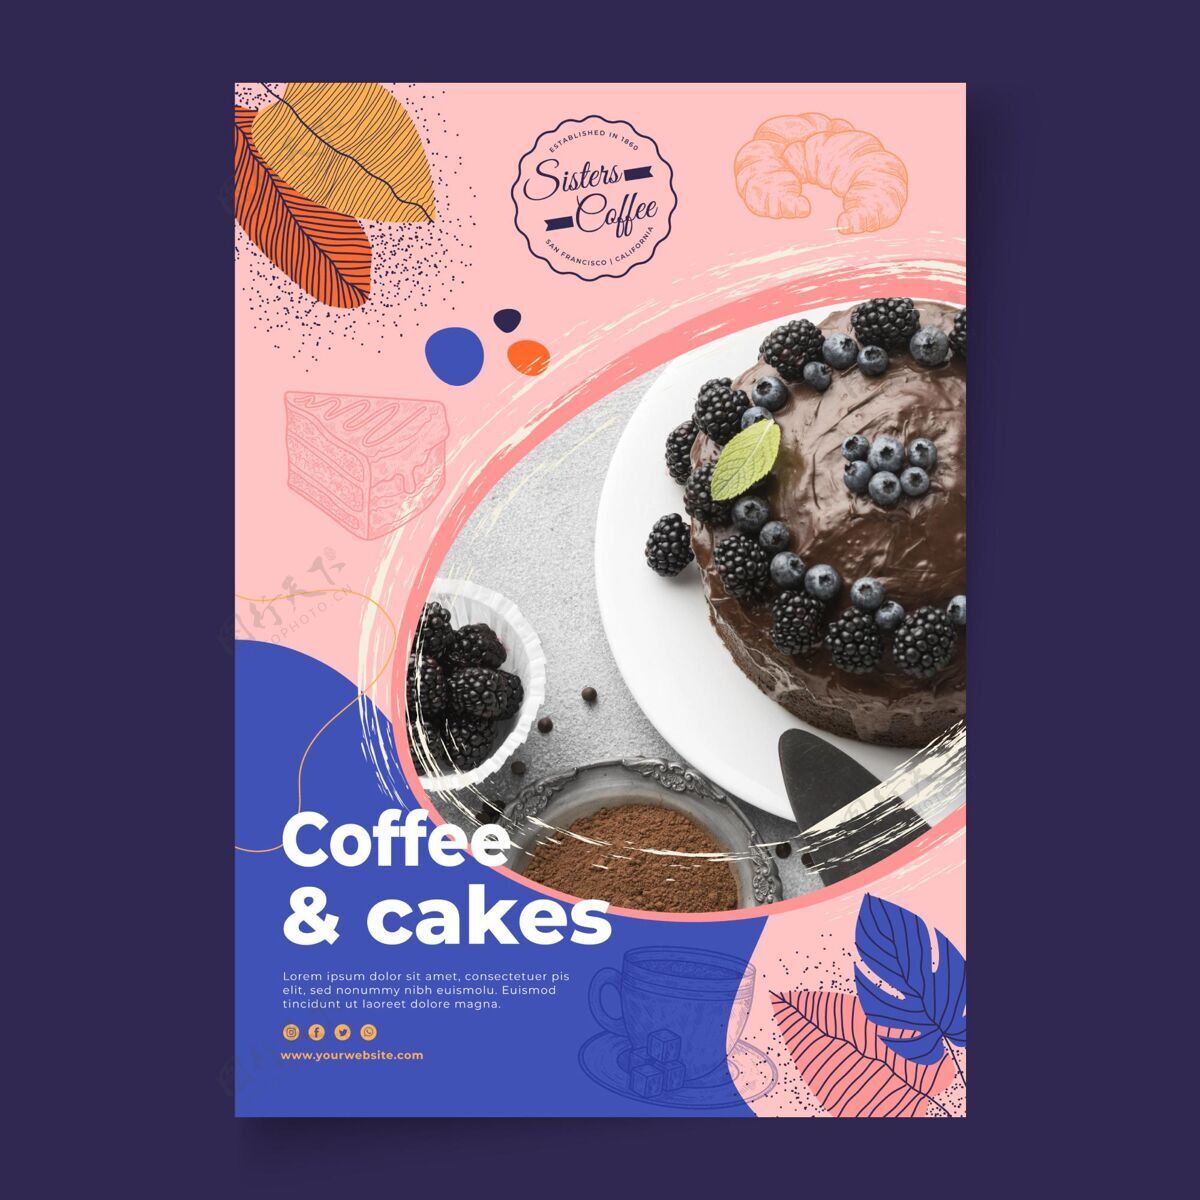 咖啡咖啡和蛋糕店海报模板咖啡馆热饮香气